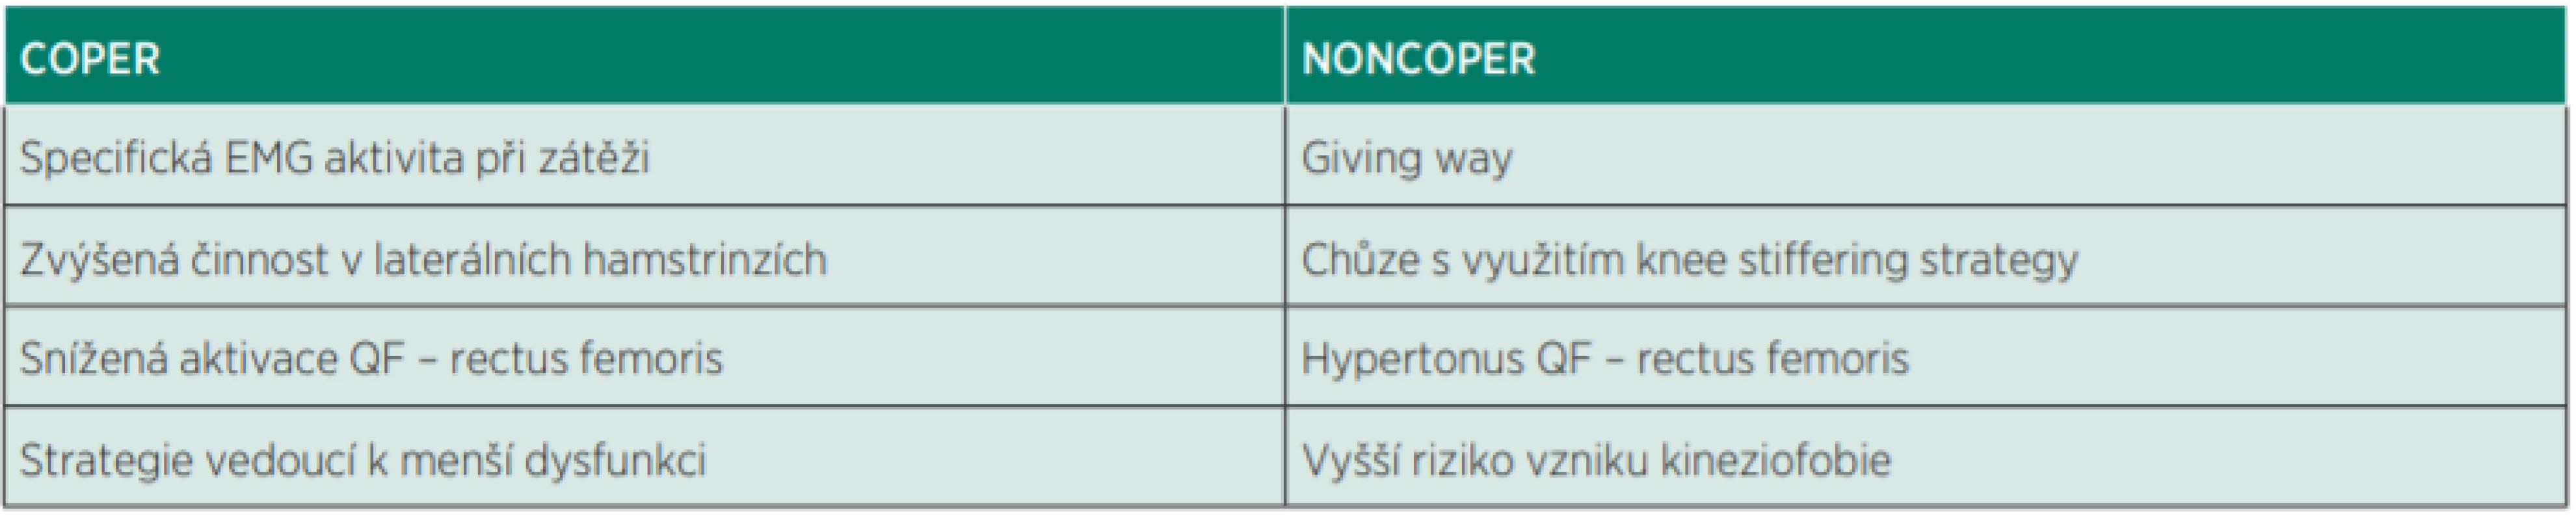 Rozdíly v neuromotorické kontrole coper/noncoper.